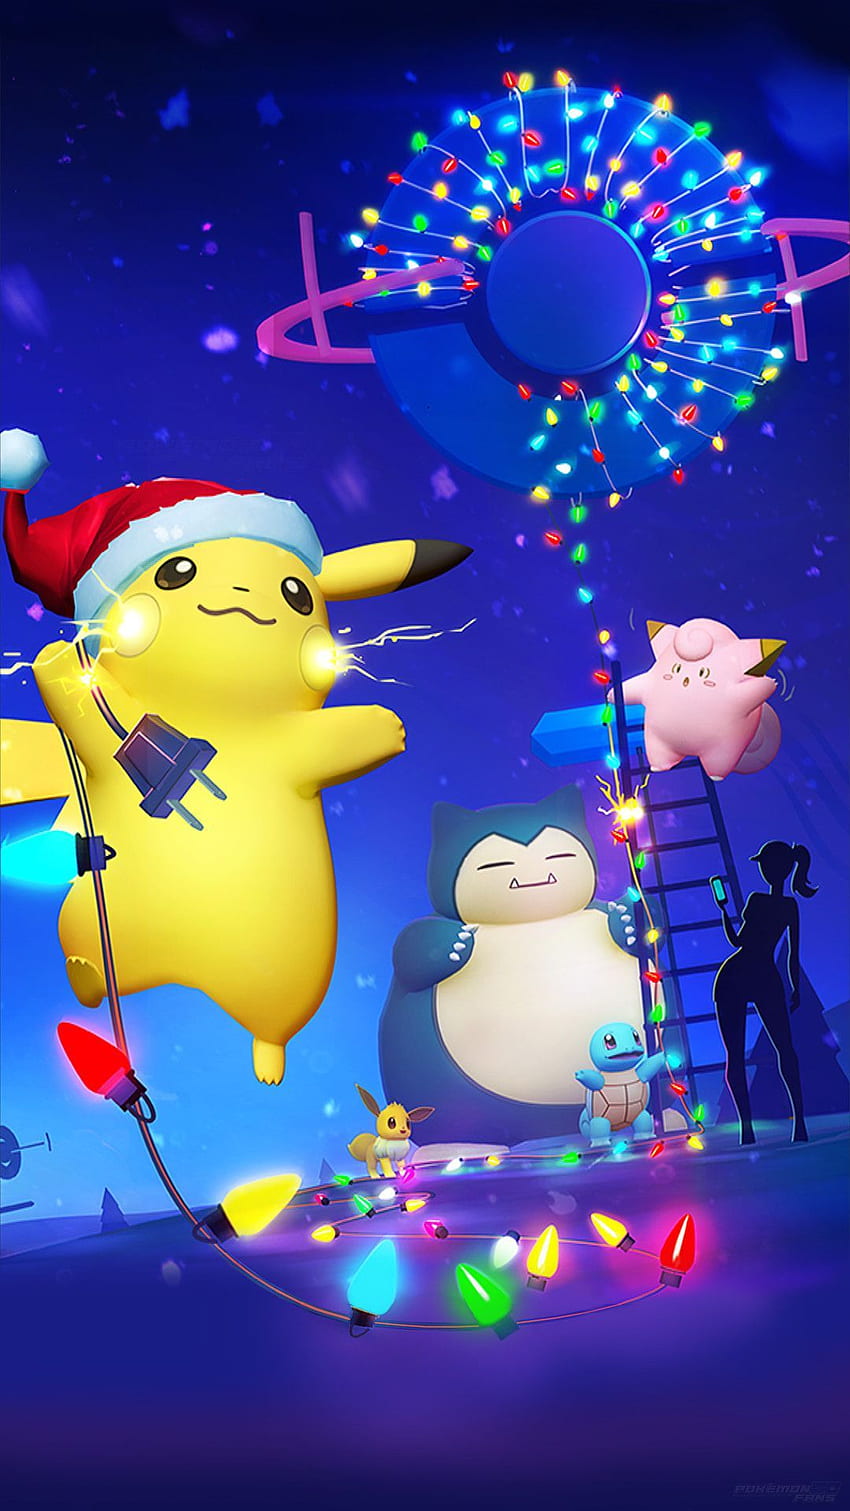 Chào đón Giáng Sinh tràn đầy cảm xúc với Pokemon Giáng Sinh hình nền cho iPhone. Những hình ảnh ngập tràn không khí lễ hội sẽ giúp bạn đón nhận những cảm xúc ấm áp và đầy niềm vui trong những ngày đặc biệt. Tạo nên không gian Giáng Sinh riêng cho mình ngay trên màn hình điện thoại!